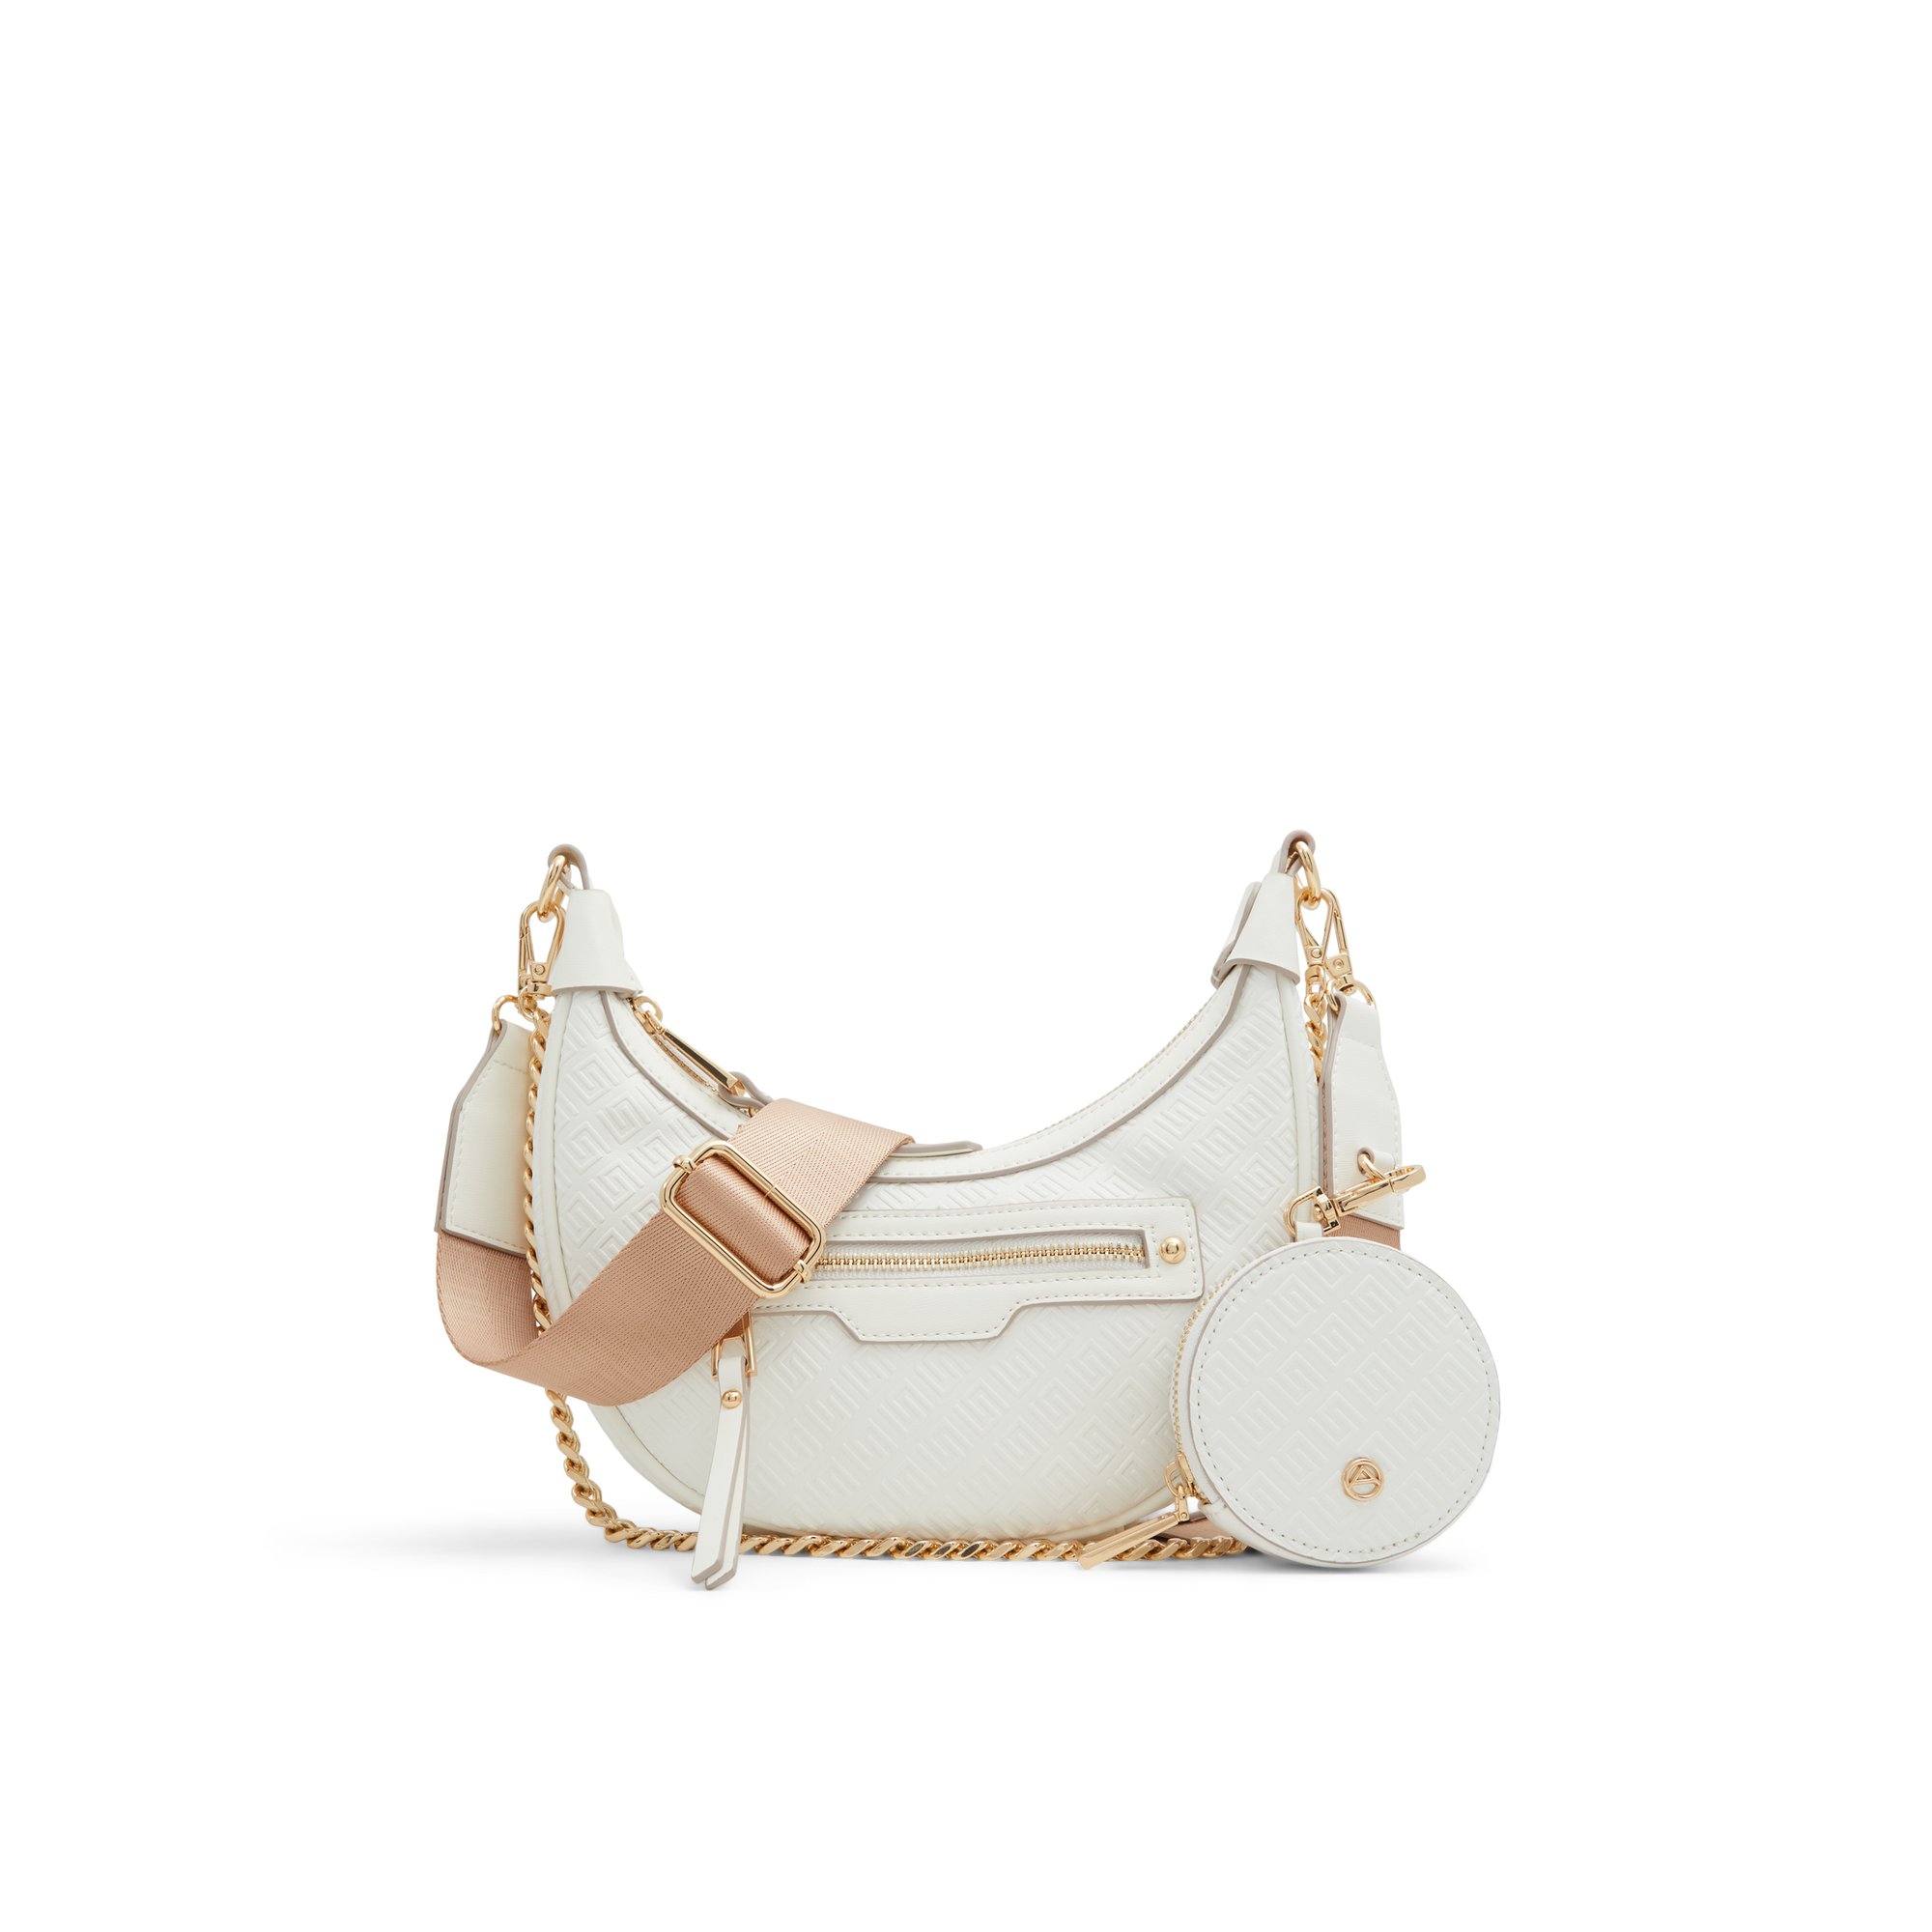 ALDO Prentonx - Women's Handbags Crossbody - White